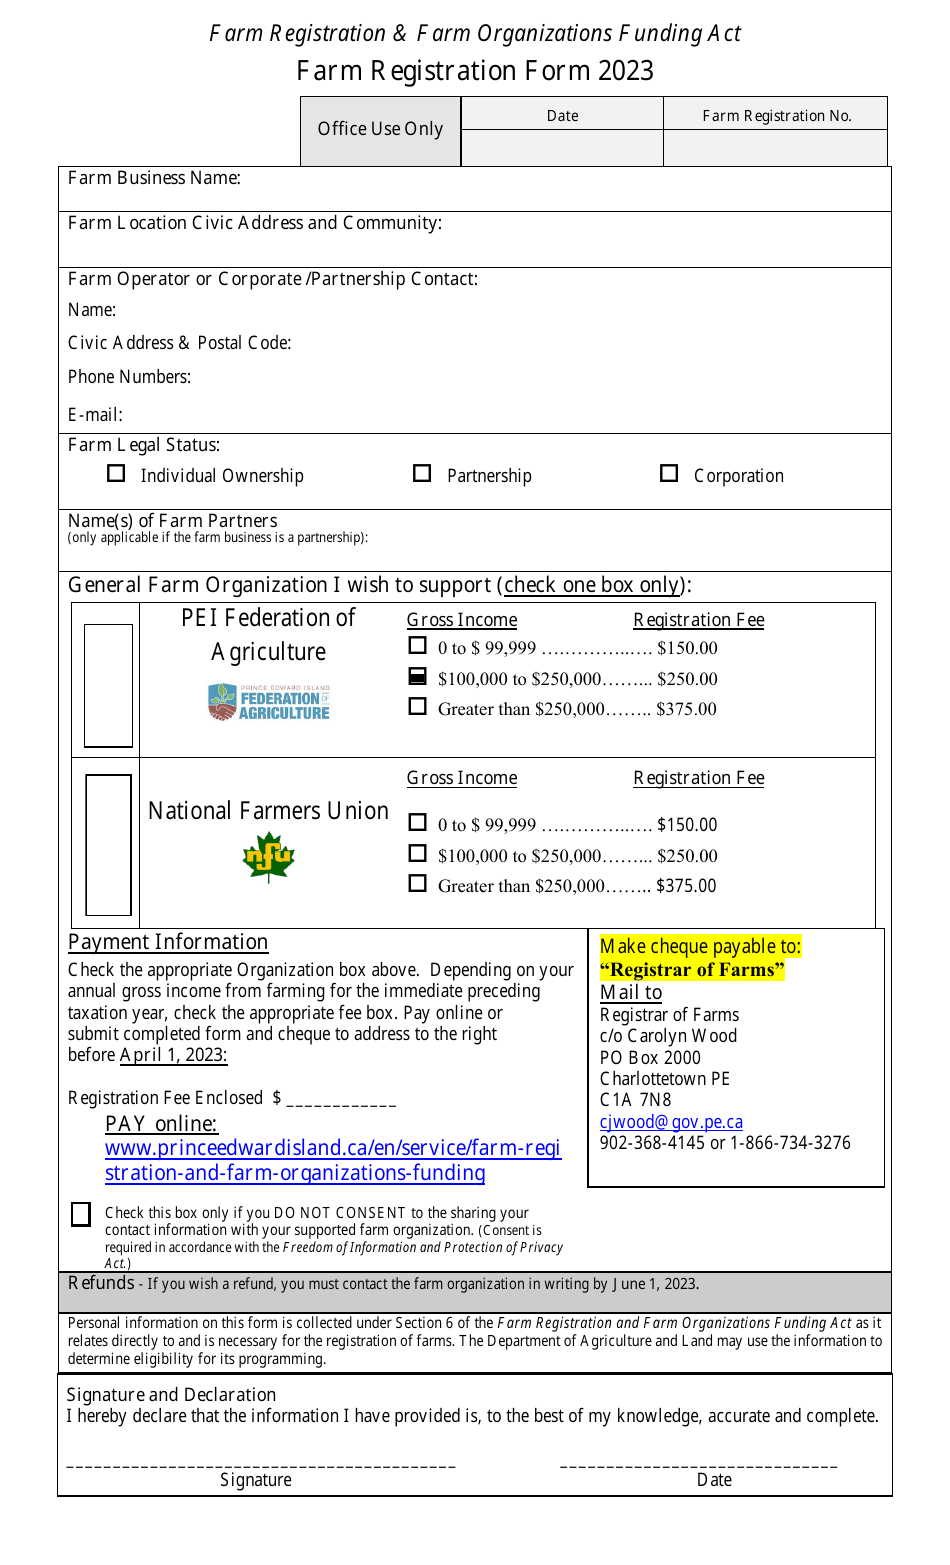 Farm Registration Form - Prince Edward Island, Canada, Page 1